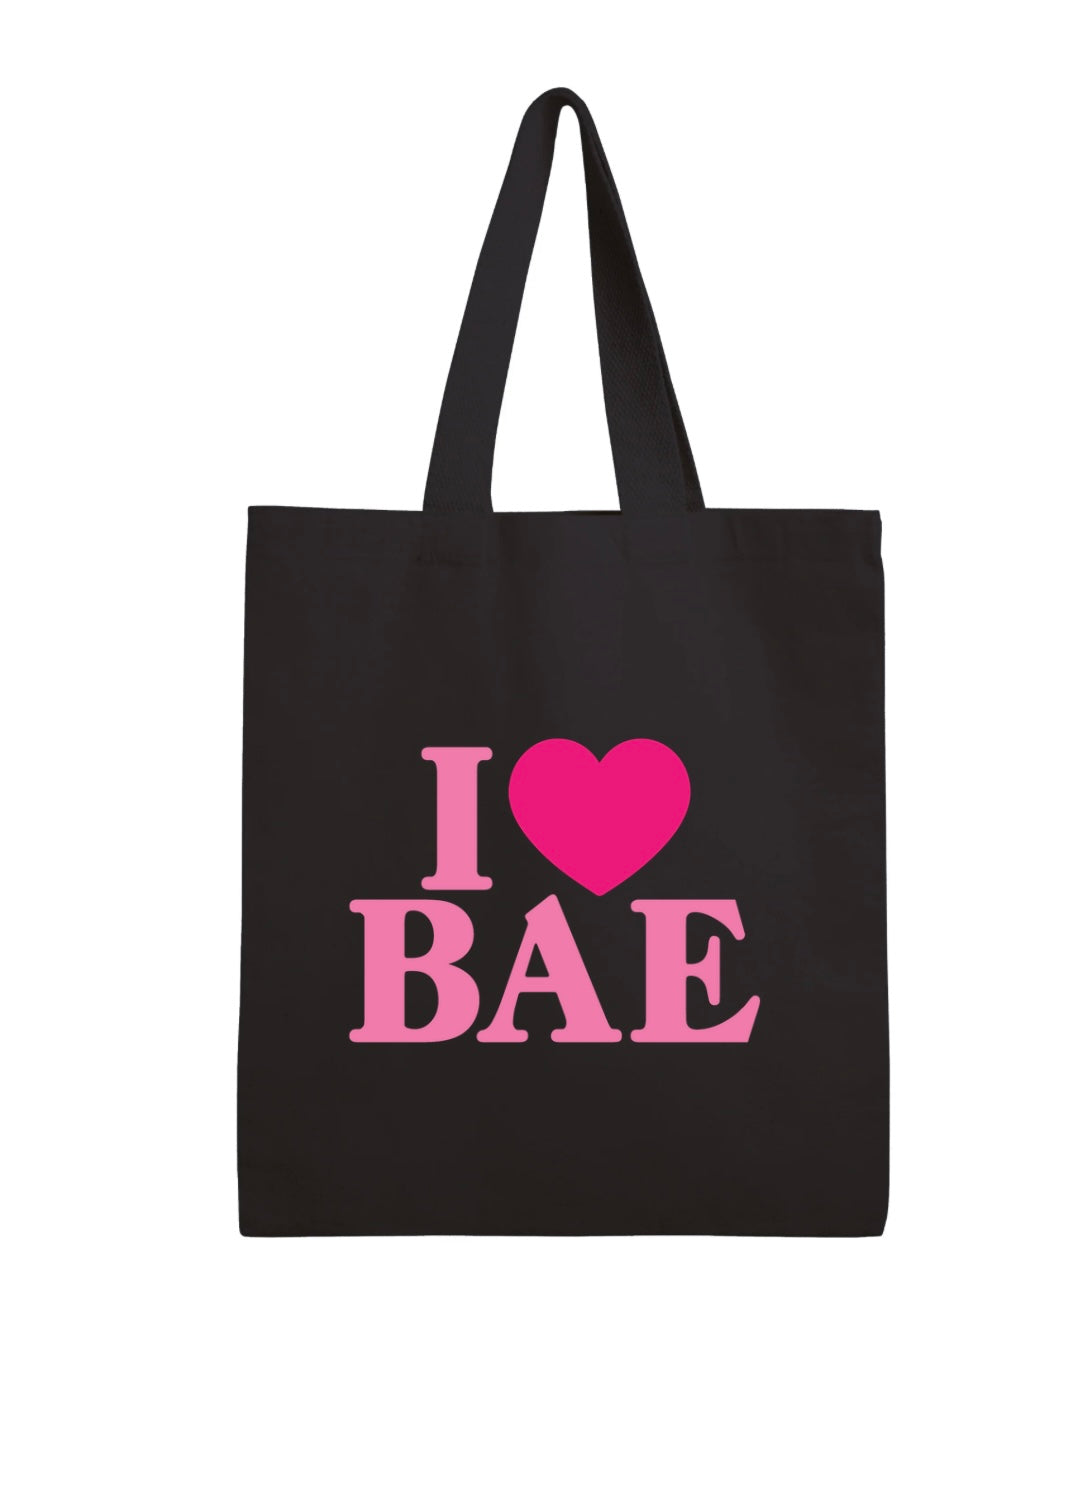 I LOVE BAE Tote Bag